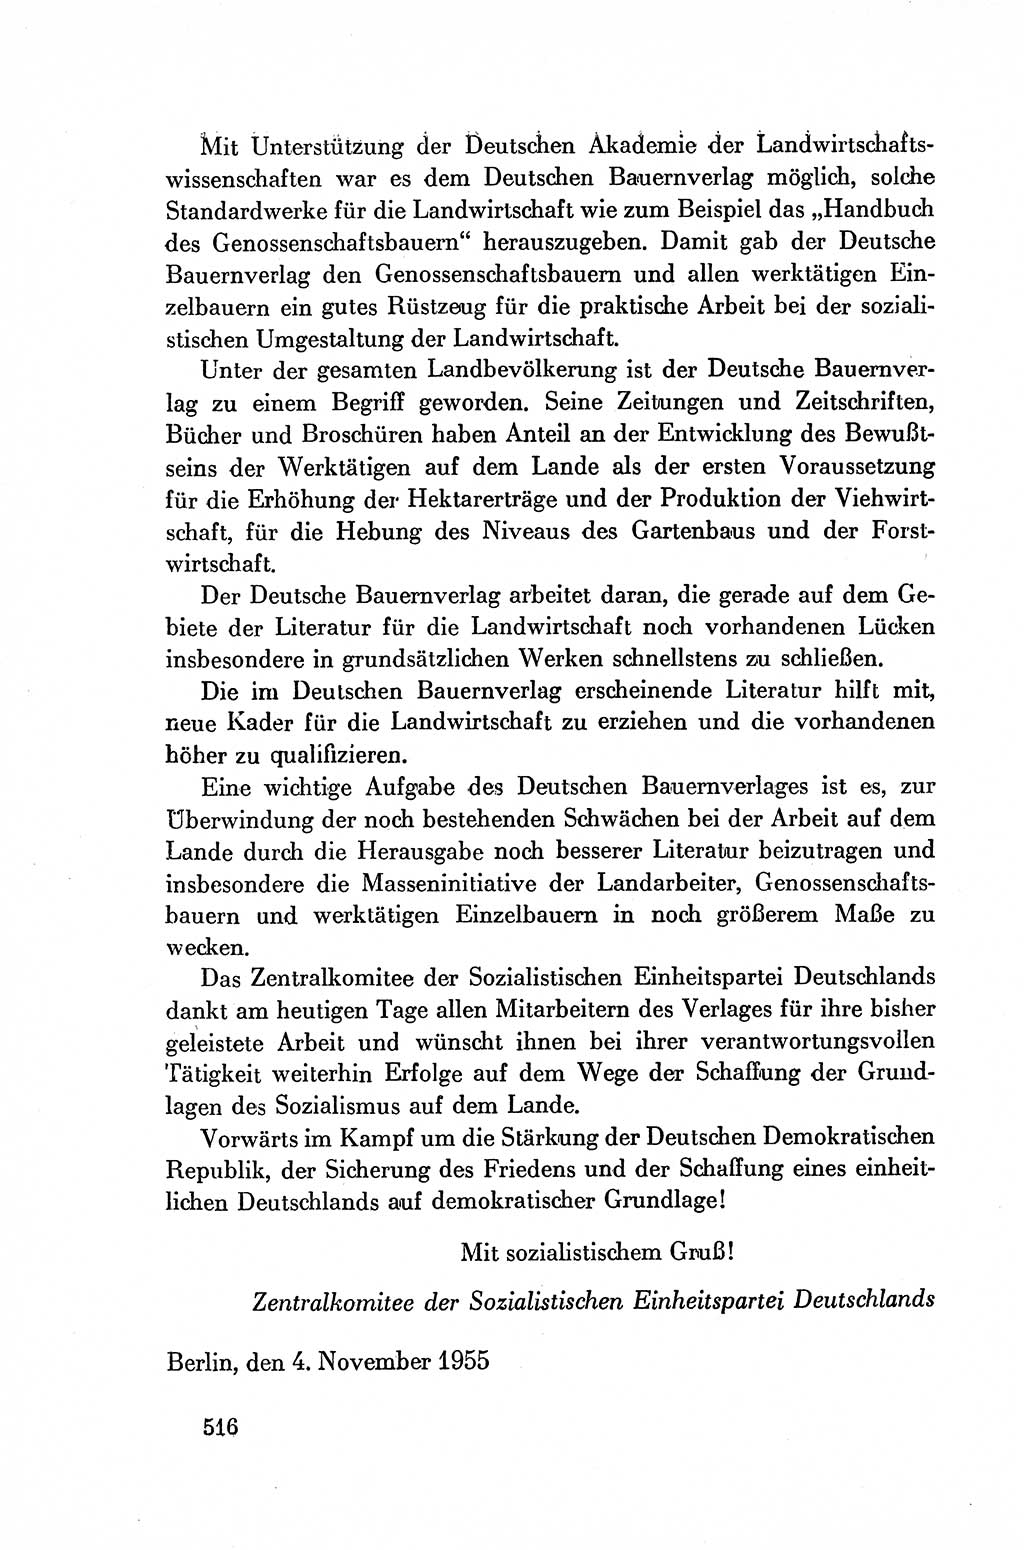 Dokumente der Sozialistischen Einheitspartei Deutschlands (SED) [Deutsche Demokratische Republik (DDR)] 1954-1955, Seite 516 (Dok. SED DDR 1954-1955, S. 516)